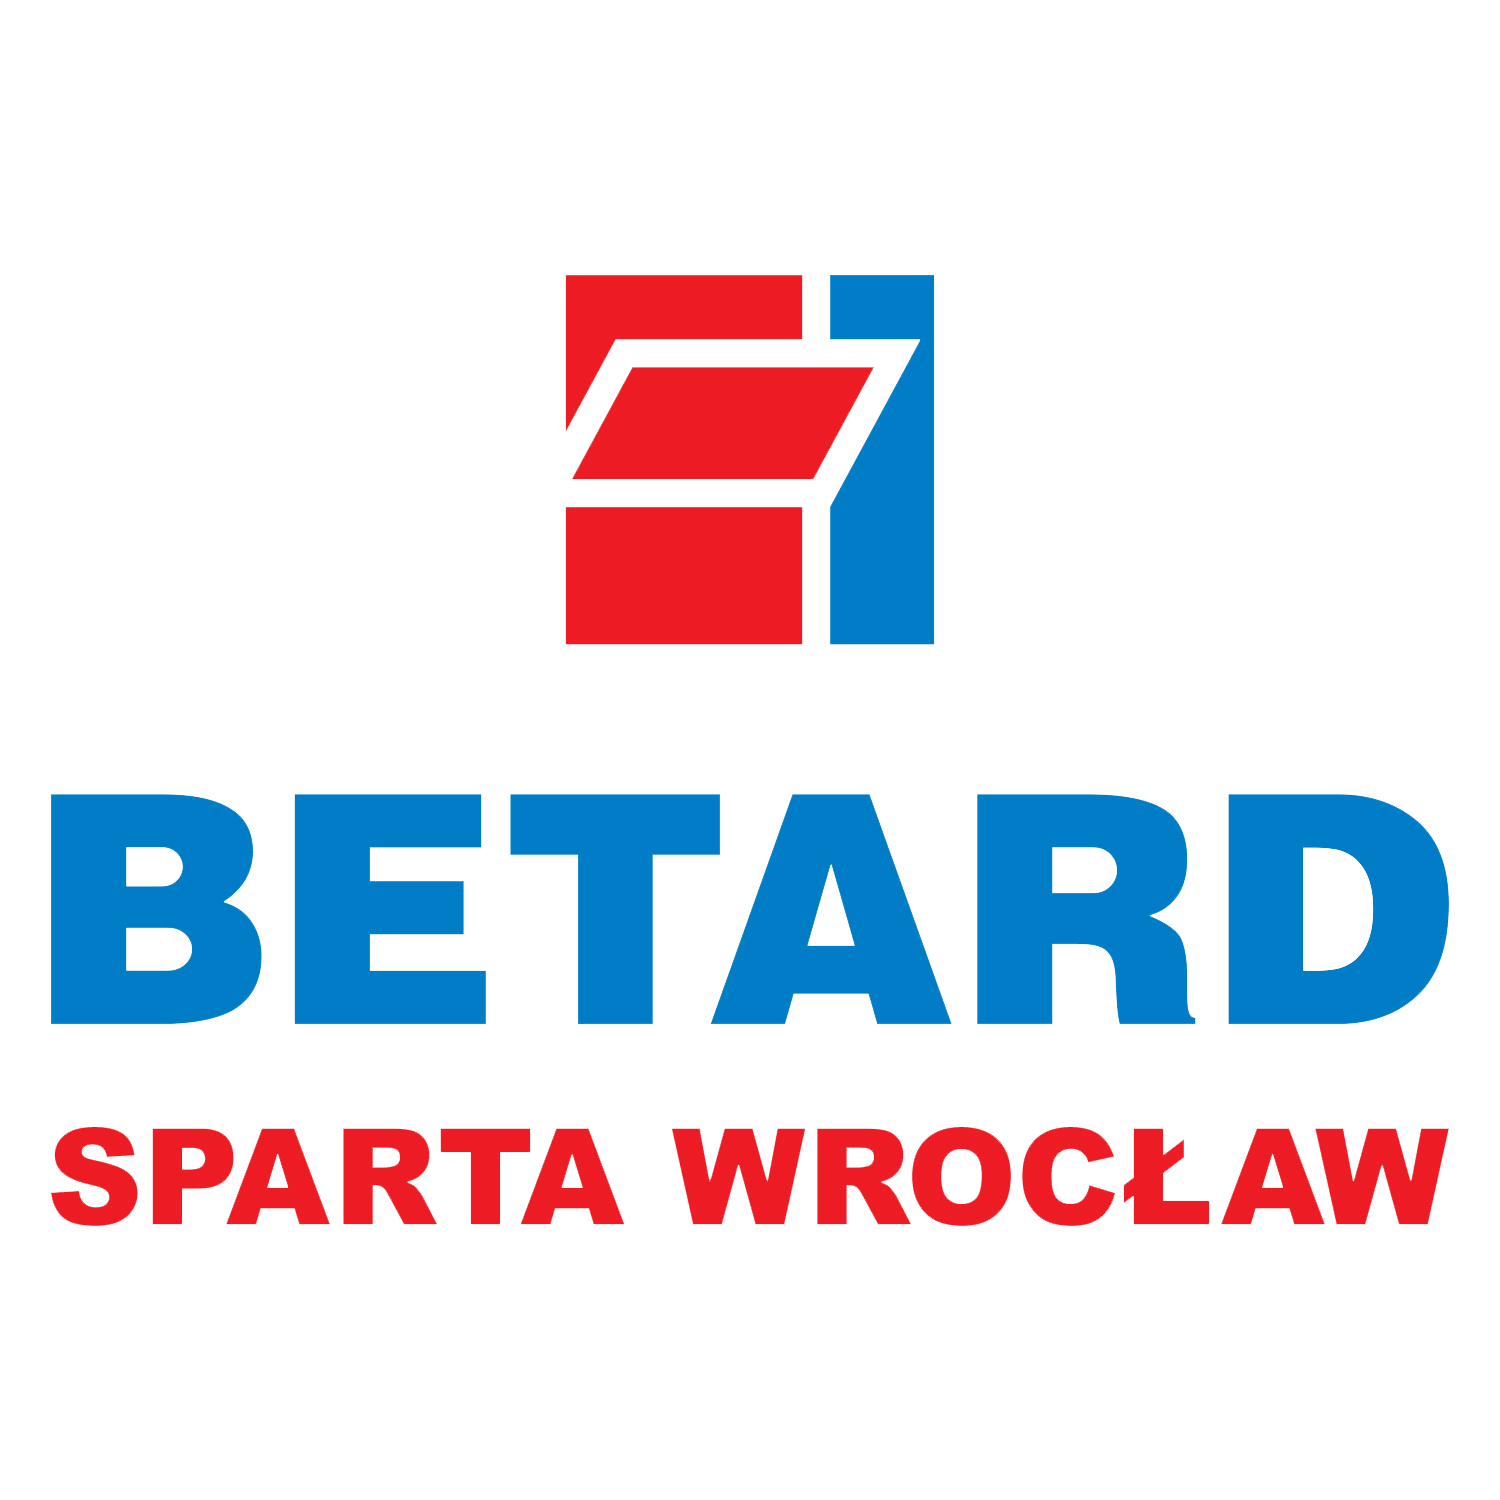 betard-sparta-wroclaw (1).png Logo